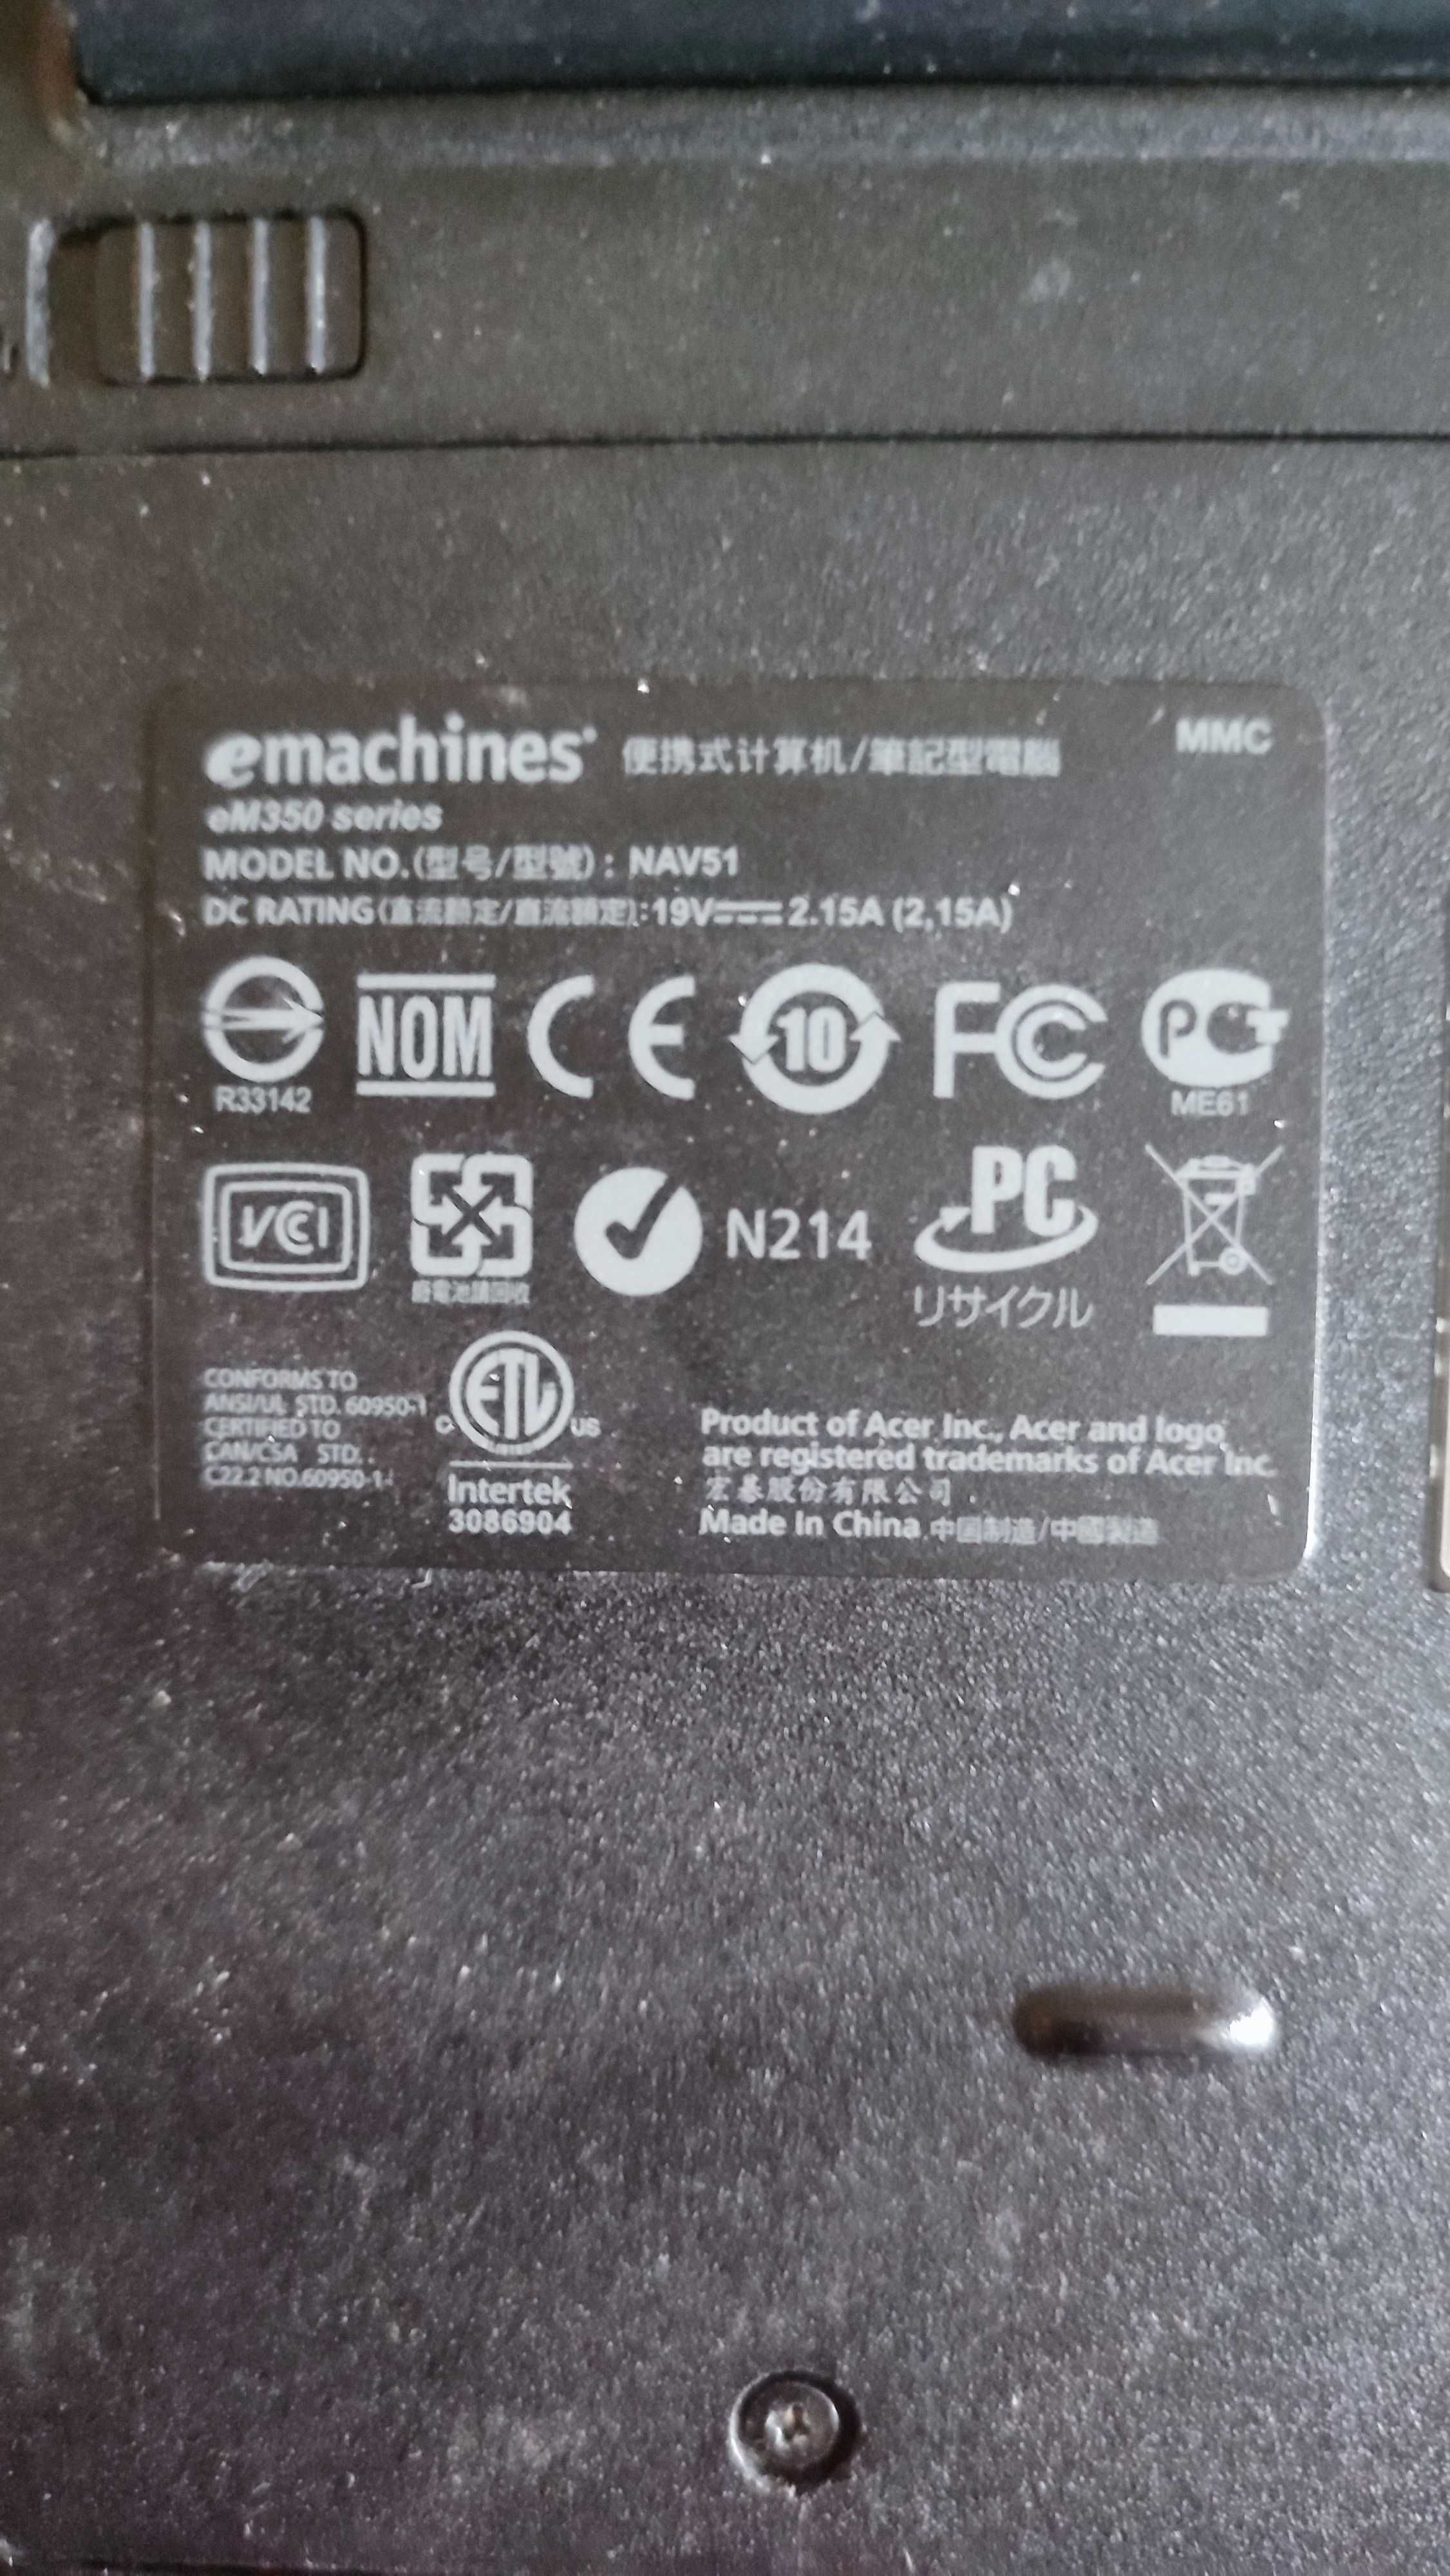 Продам нетбук Emachines eM350 series б/у